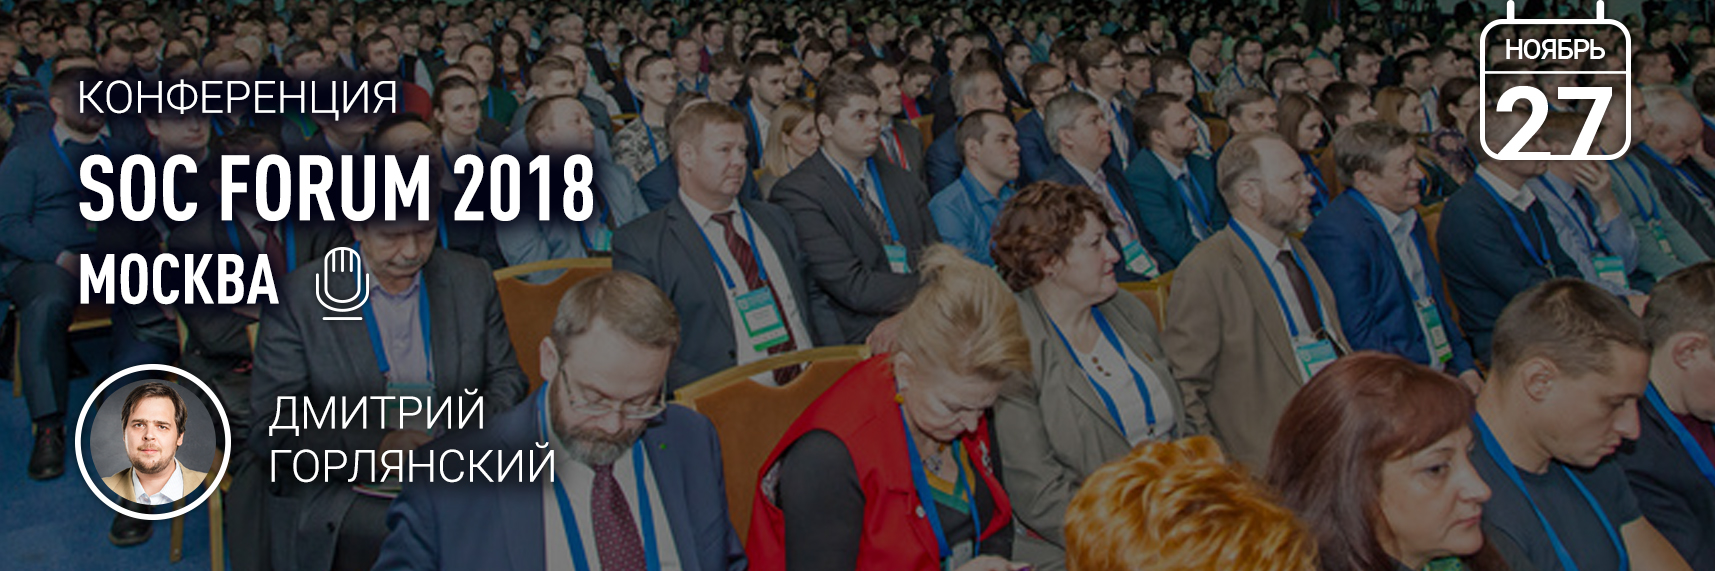 SOC Forum 2018 пройдёт в Москве